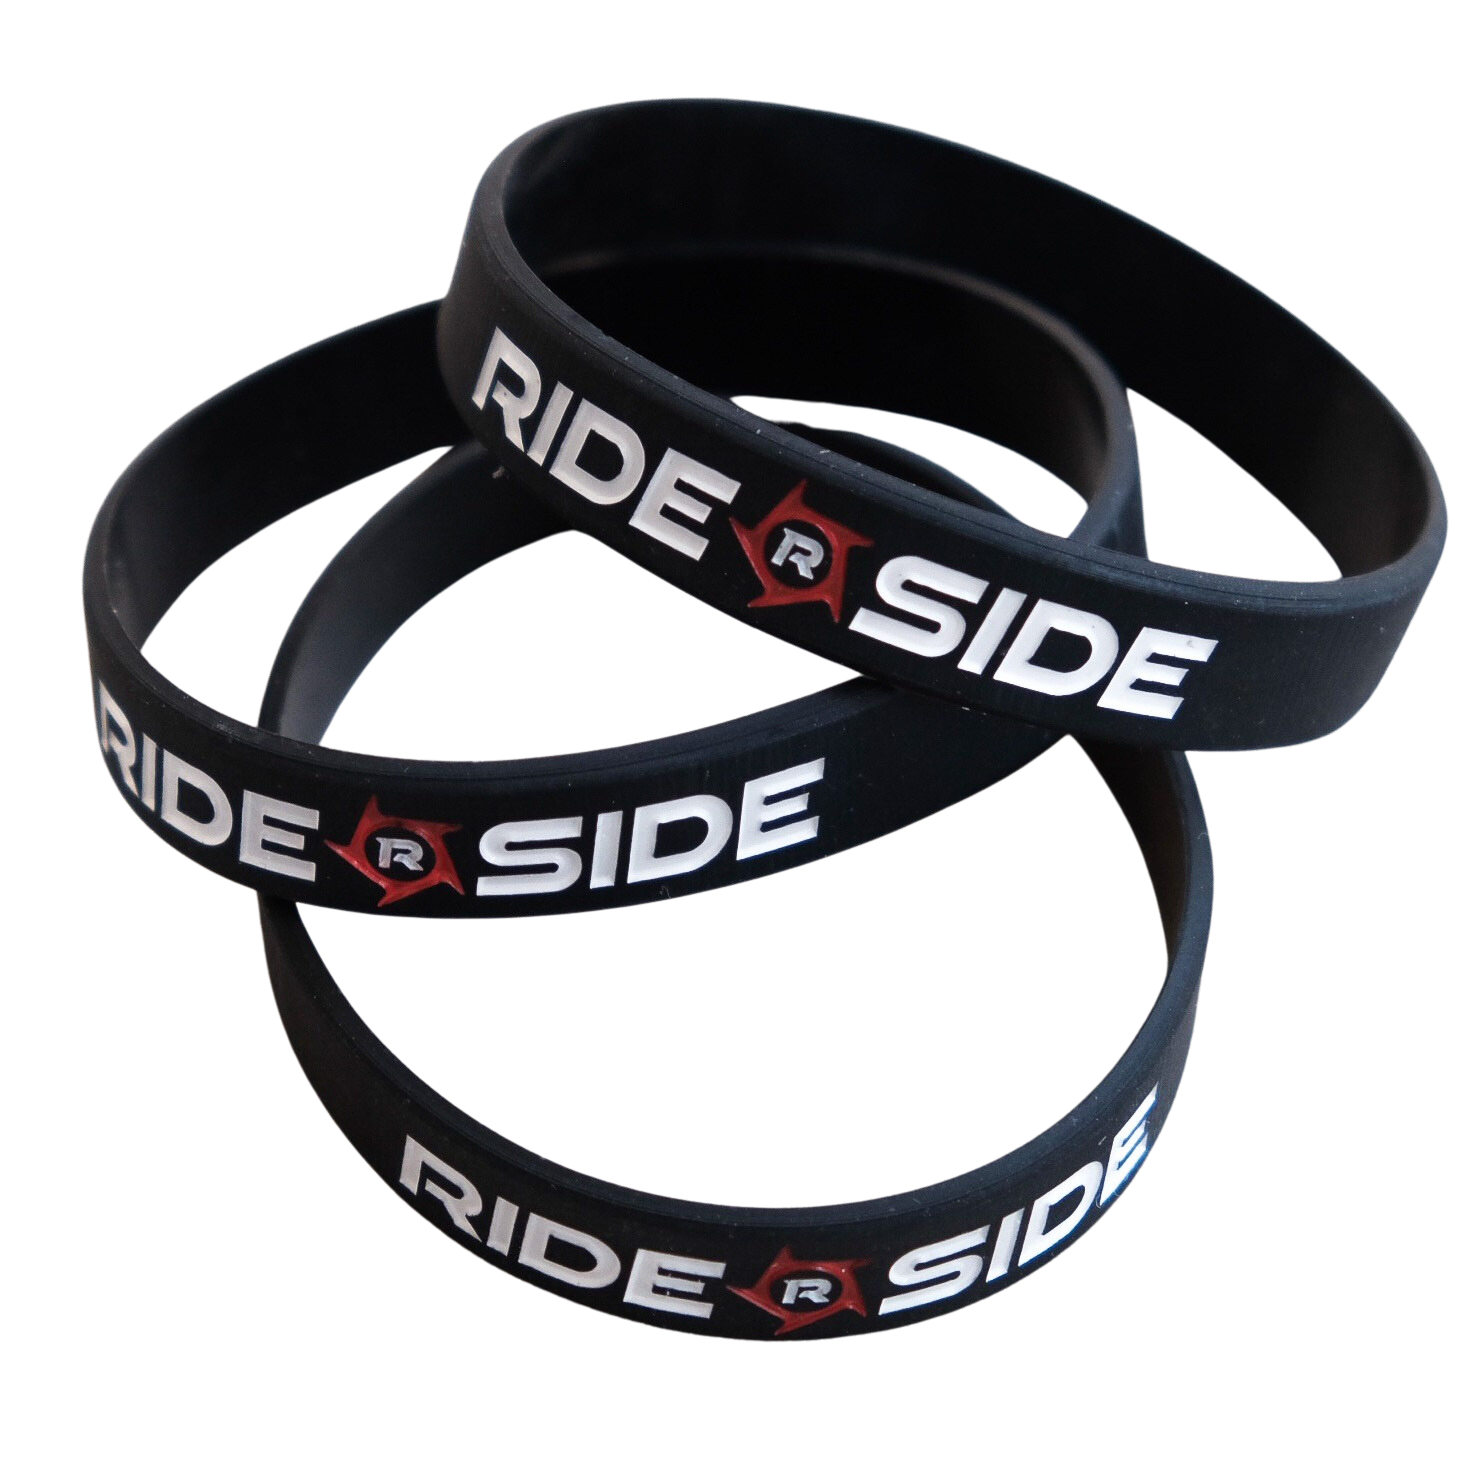 RideSide Wristband